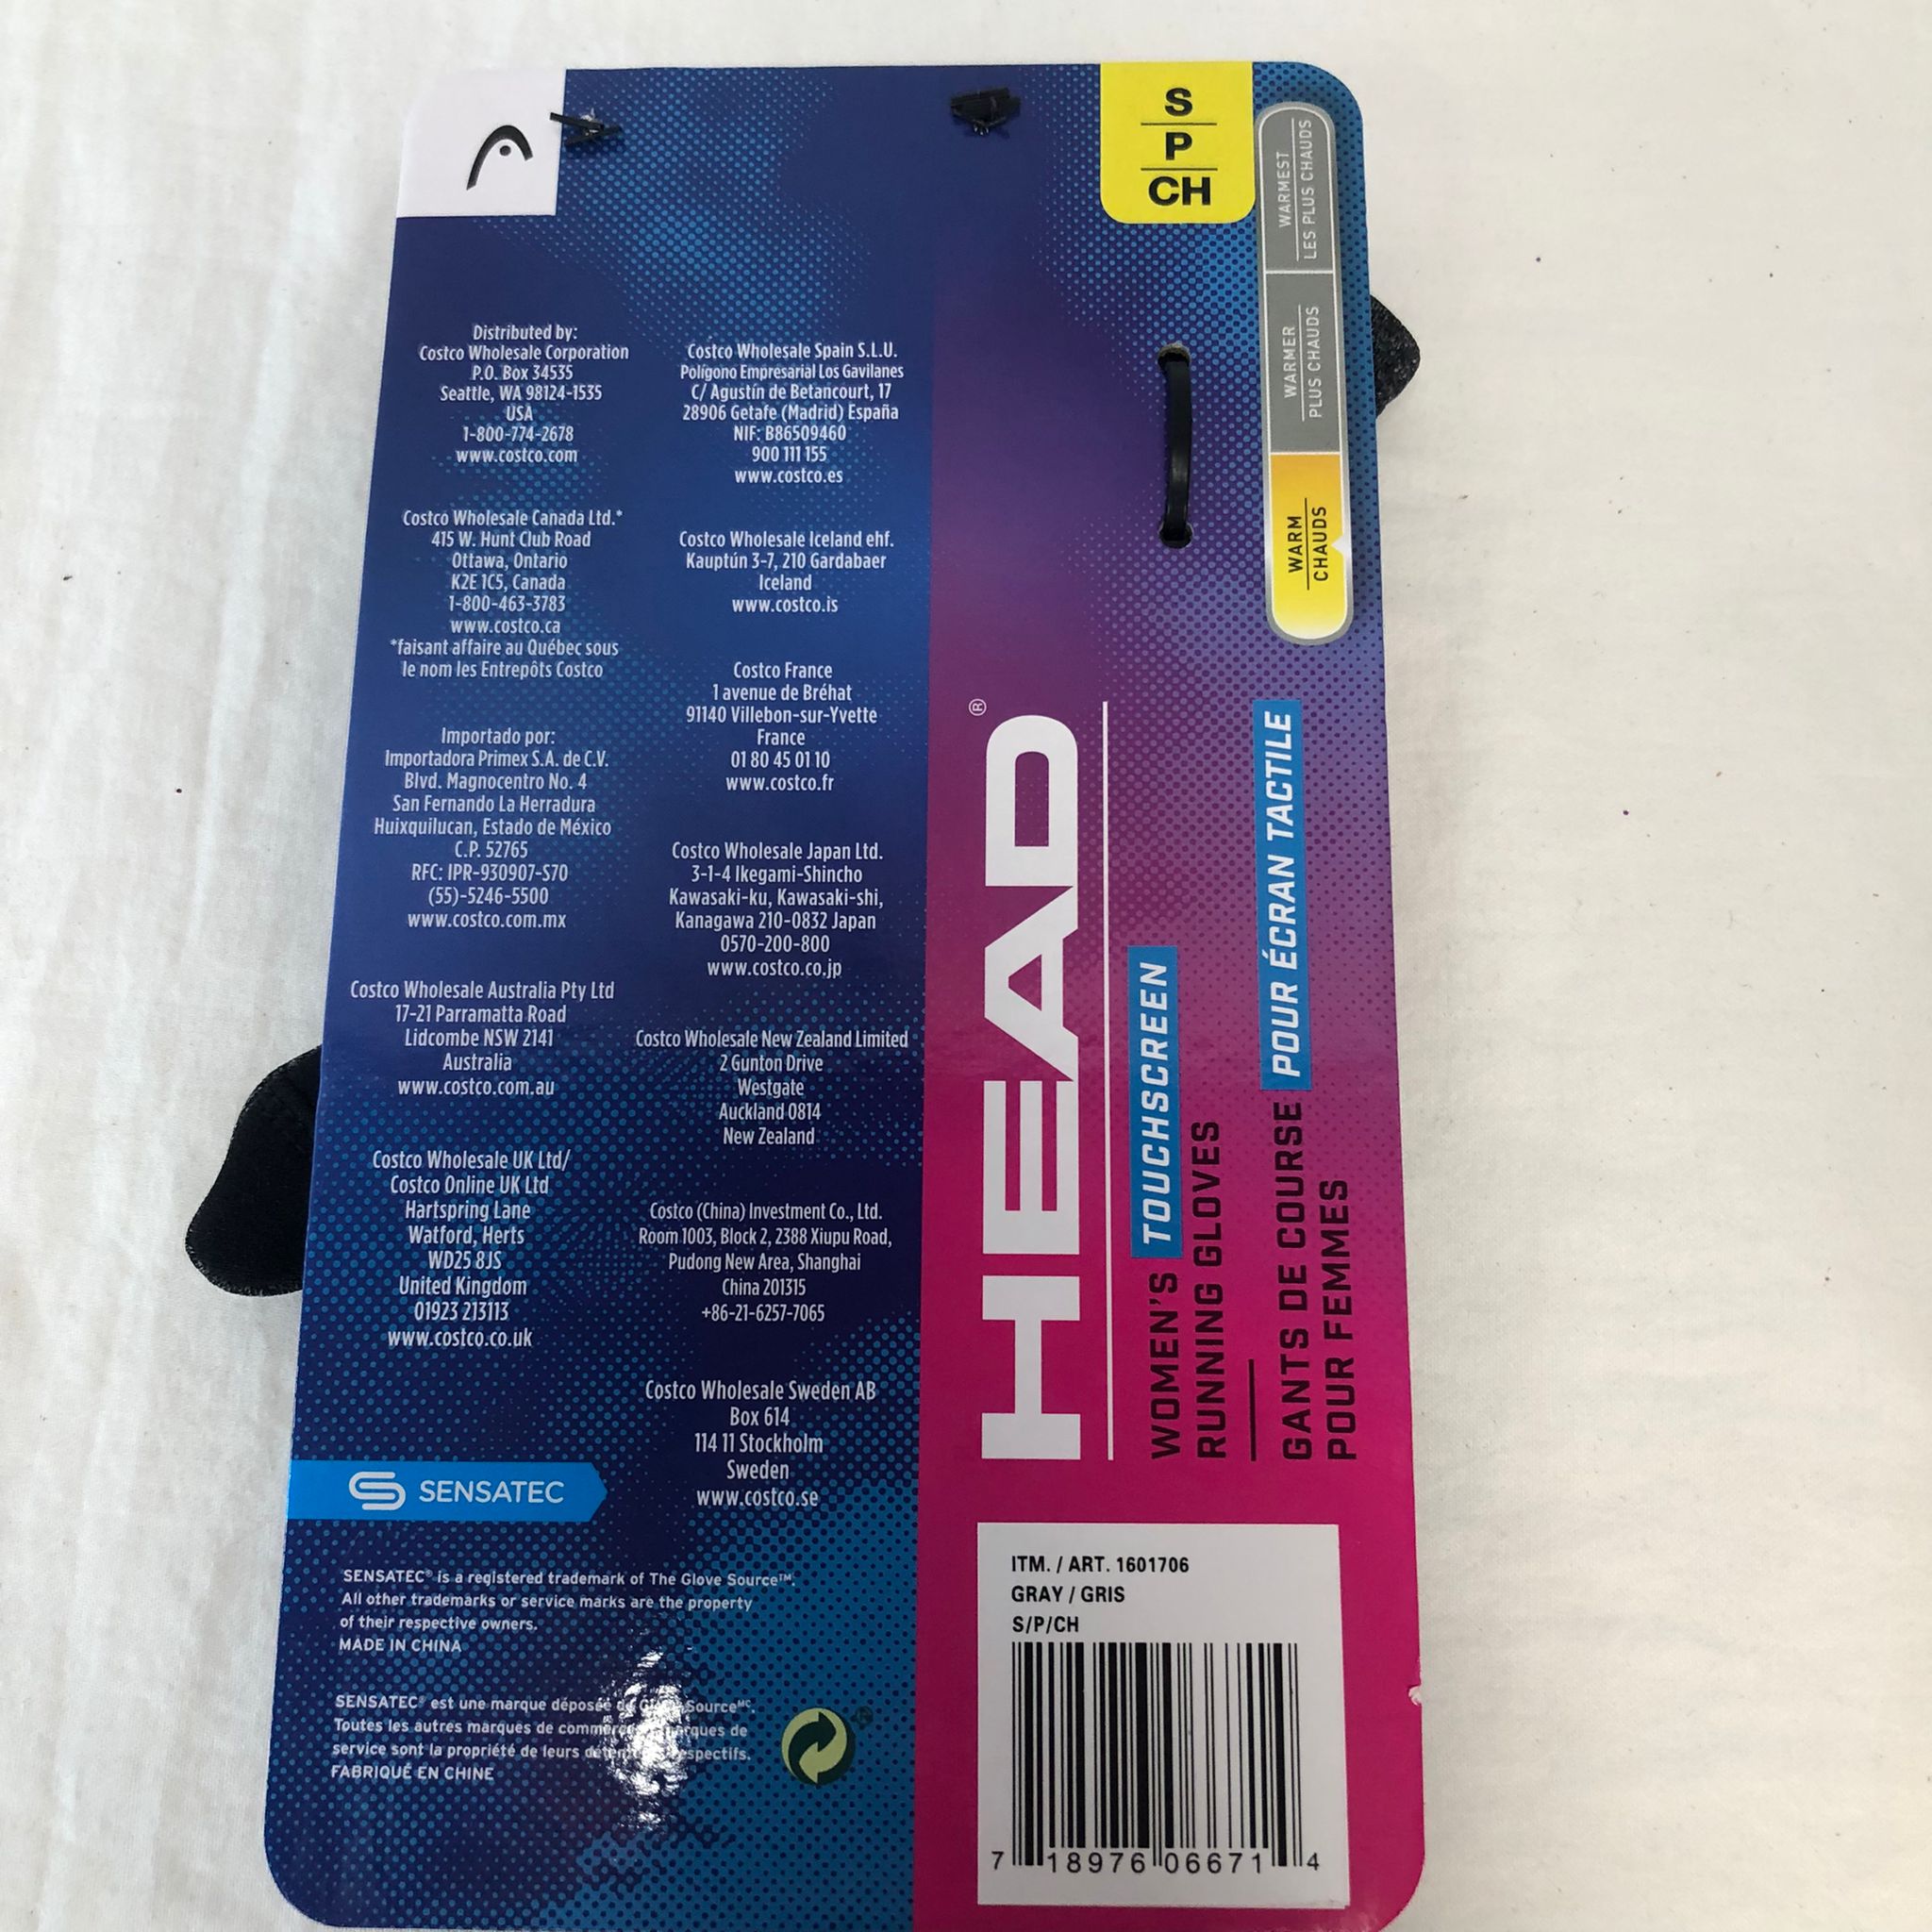 HEAD Women’s Touchscreen Running Gloves